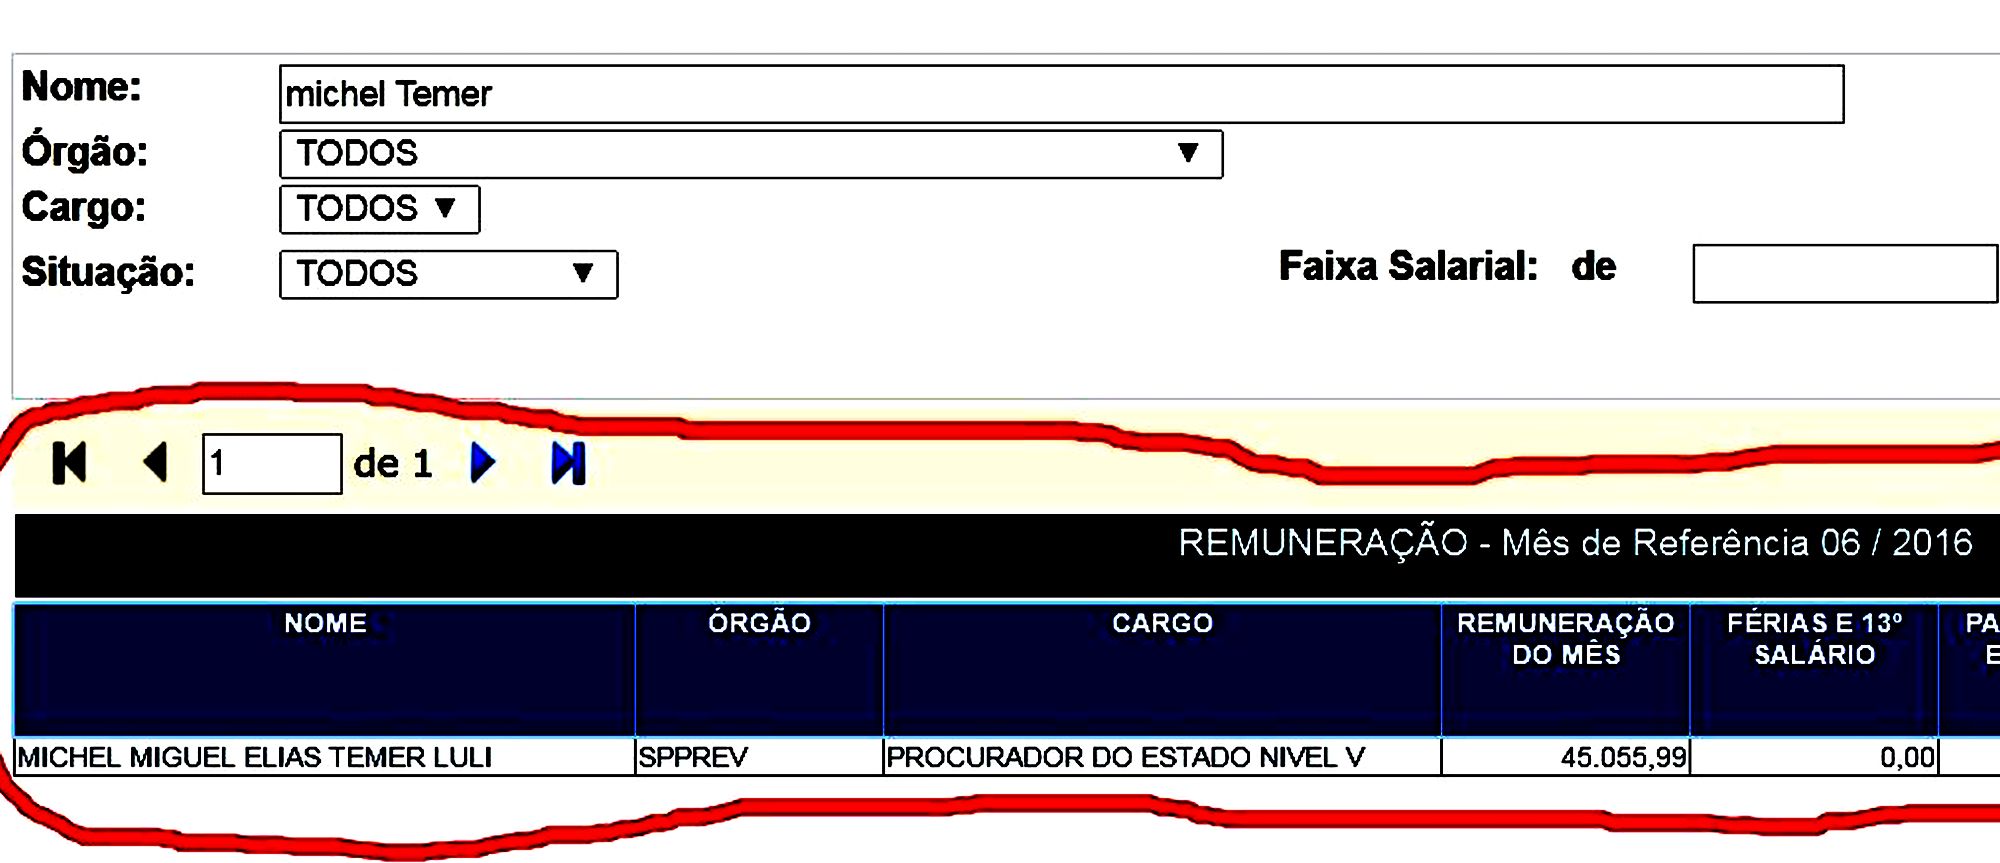 Extrato do Portal da Transparência, do governo do Estado de São Paulo